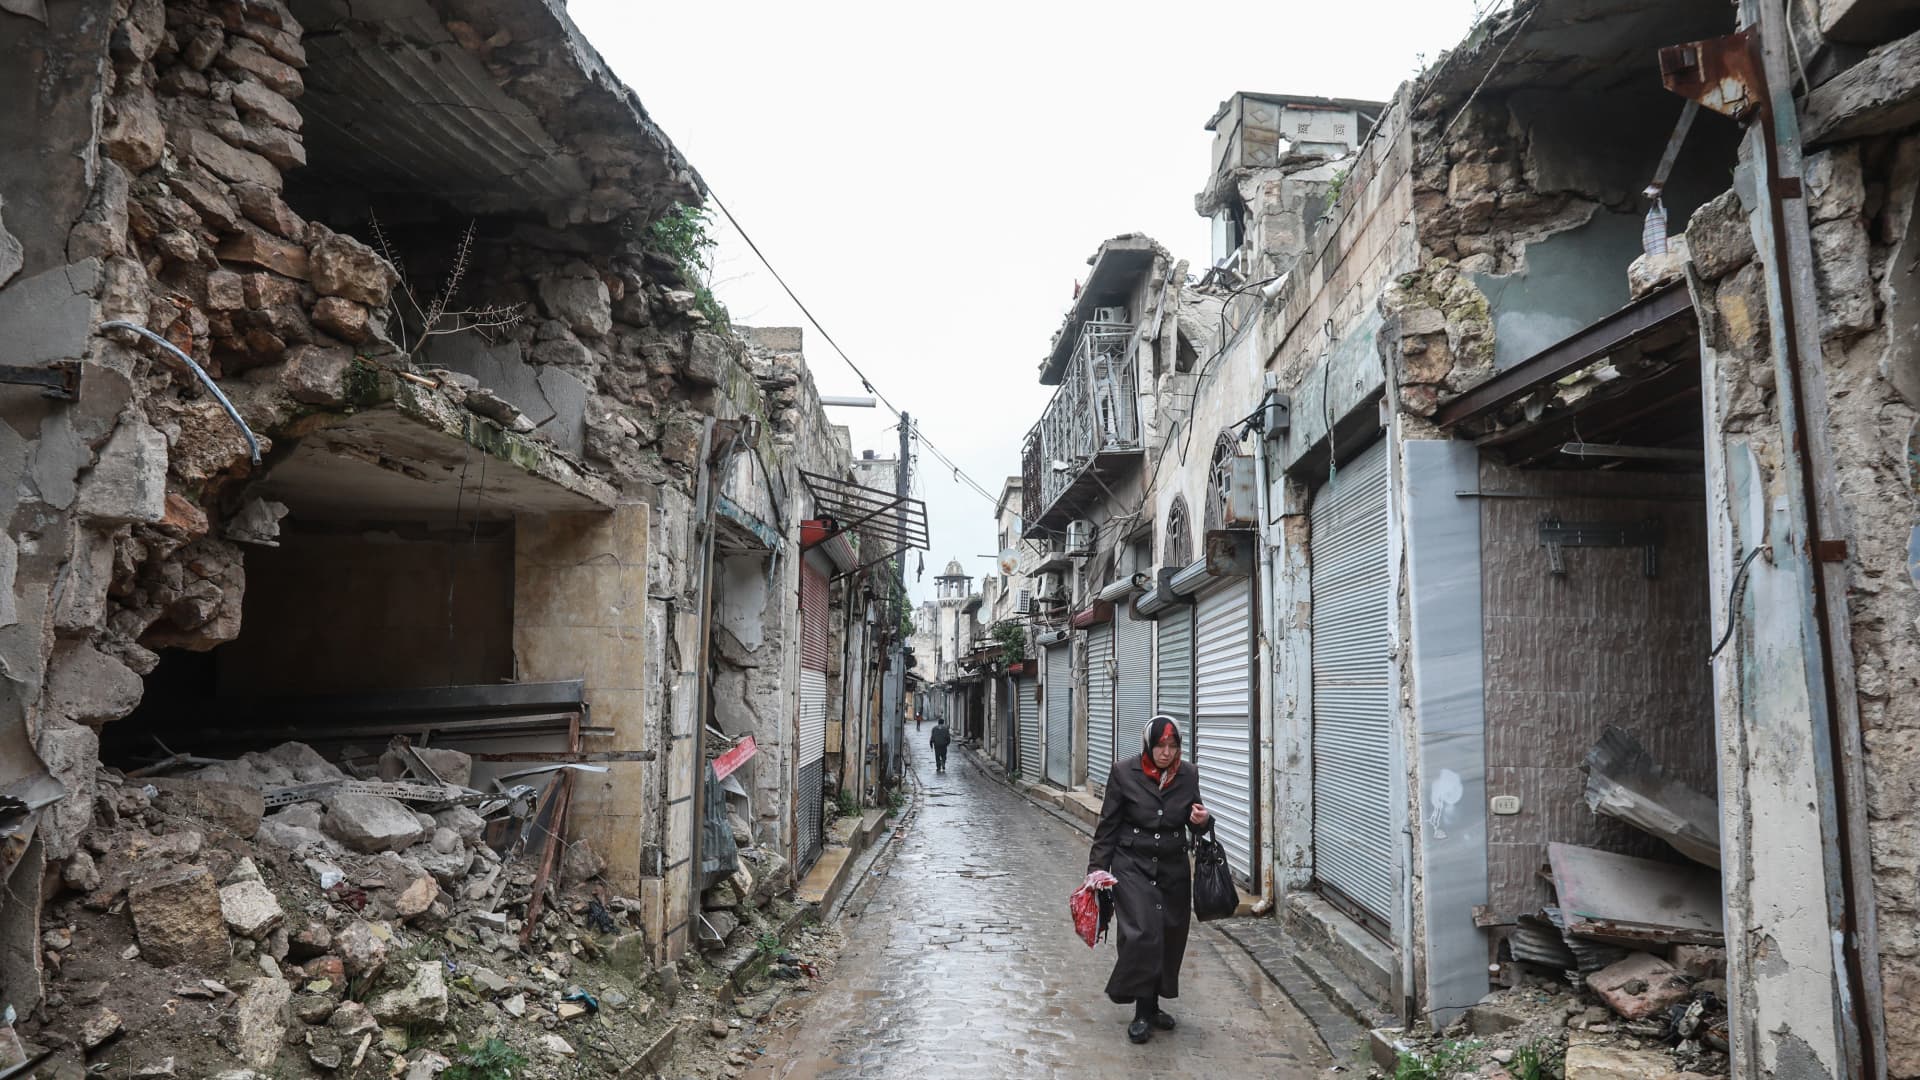 A Syrian woman walks amid destruction in the Bab al-Qinnasrin area in Aleppo's Old city, on February 10, 2019.